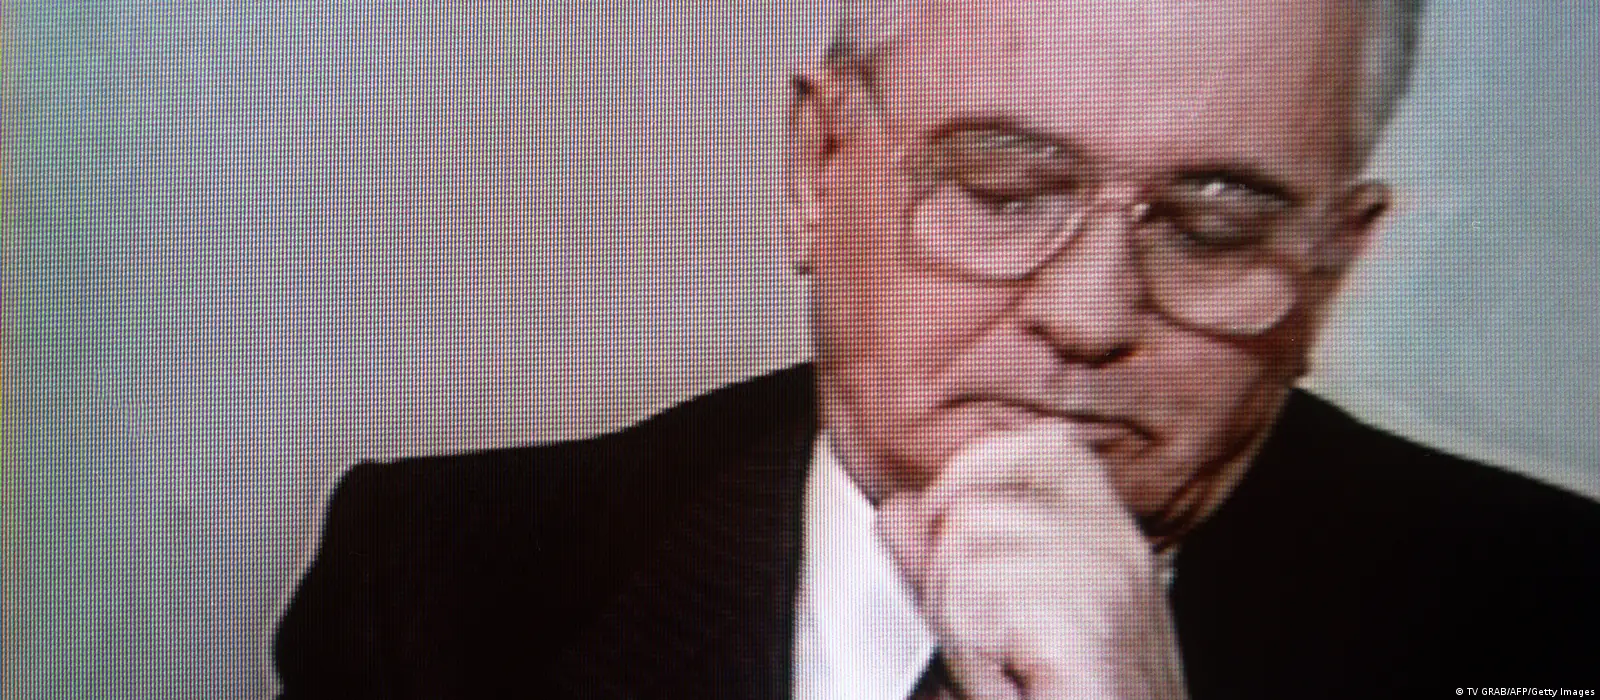 Gorbachev, the new face of Louis Vuitton